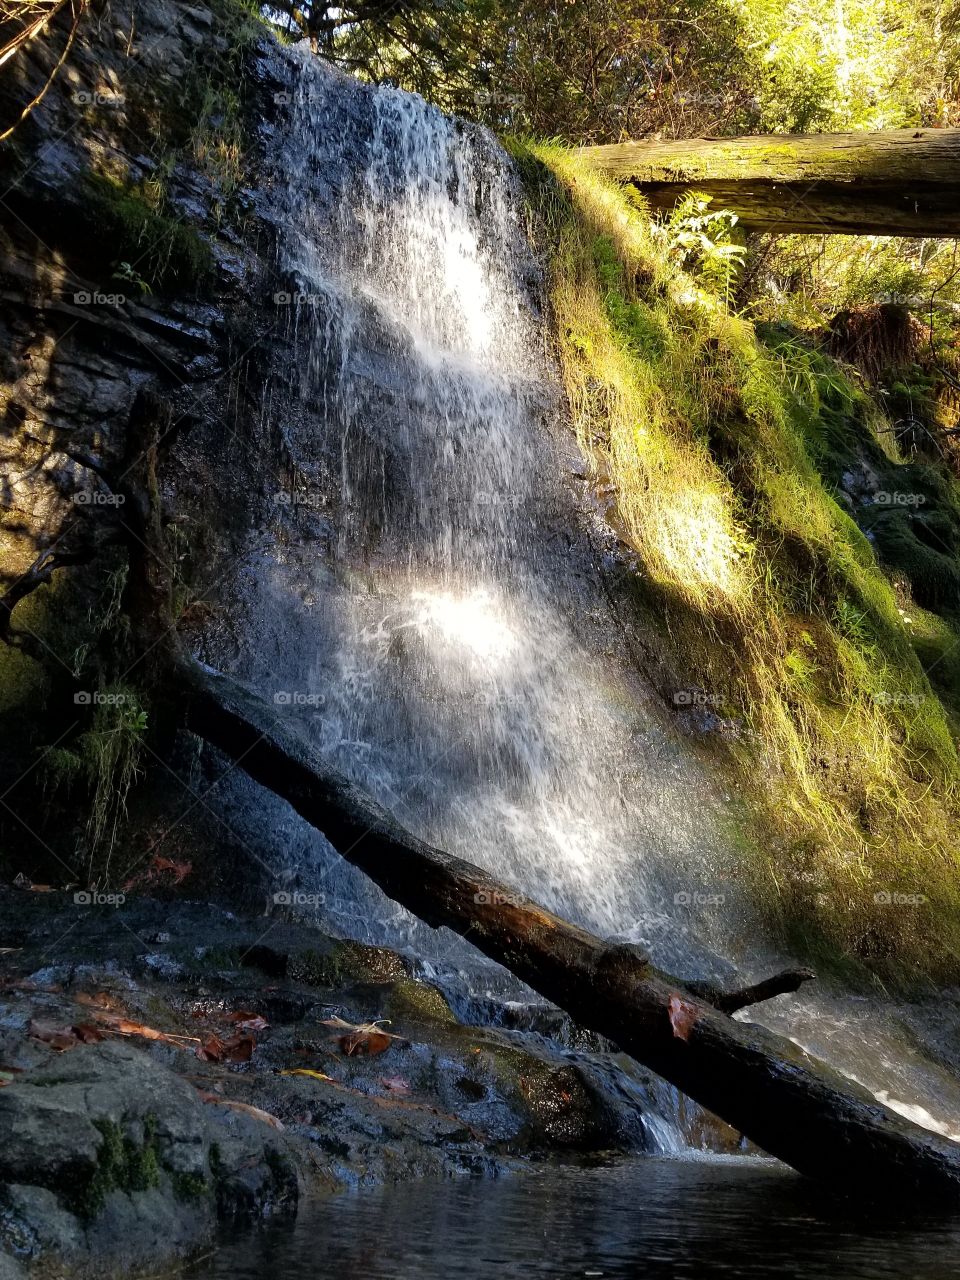 Cherry Creek falls trail